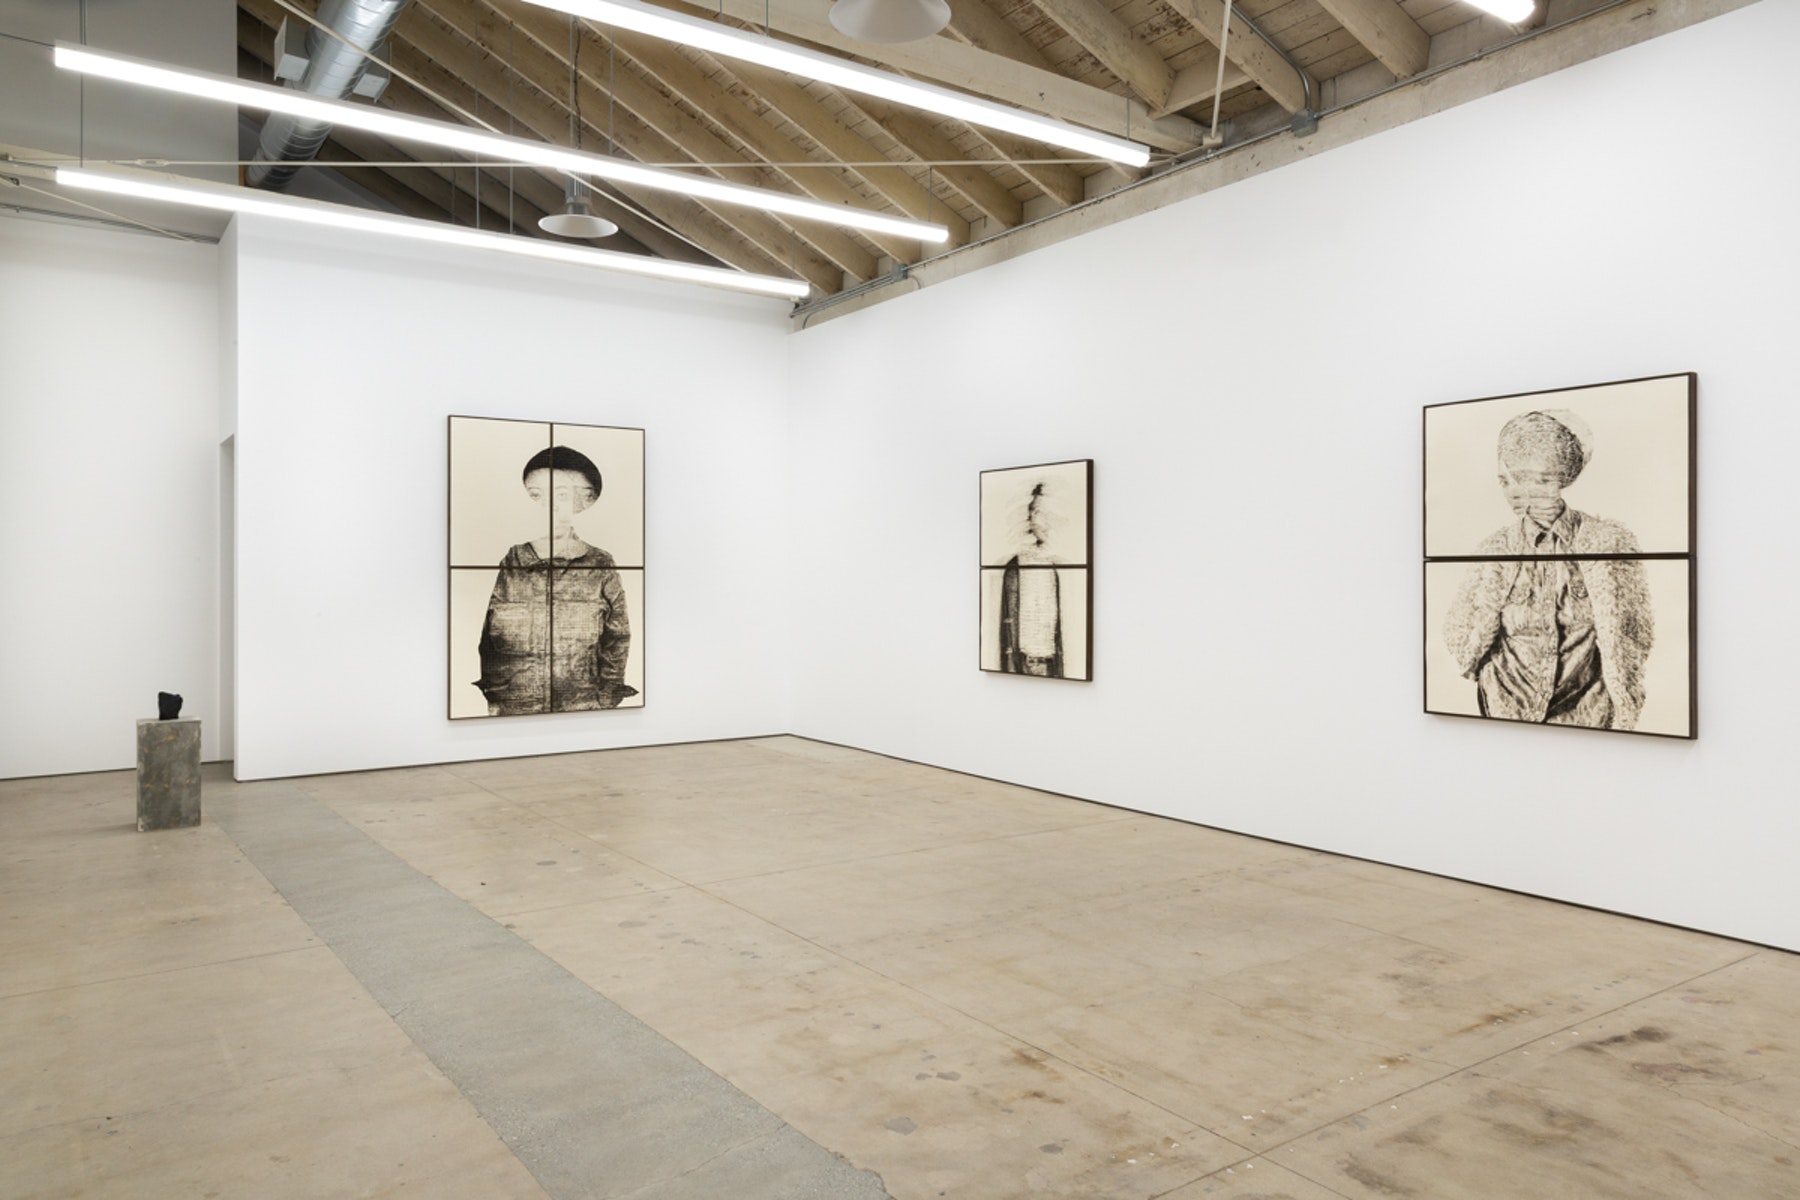 洛杉矶马修布朗的 Kenturah Davis 的“Blur in the Interest of Precision”展览现场图。 2019 年 1 月 26 日 - 3 月 2 日。由艺术家和洛杉矶的 Matthew Brown 提供。